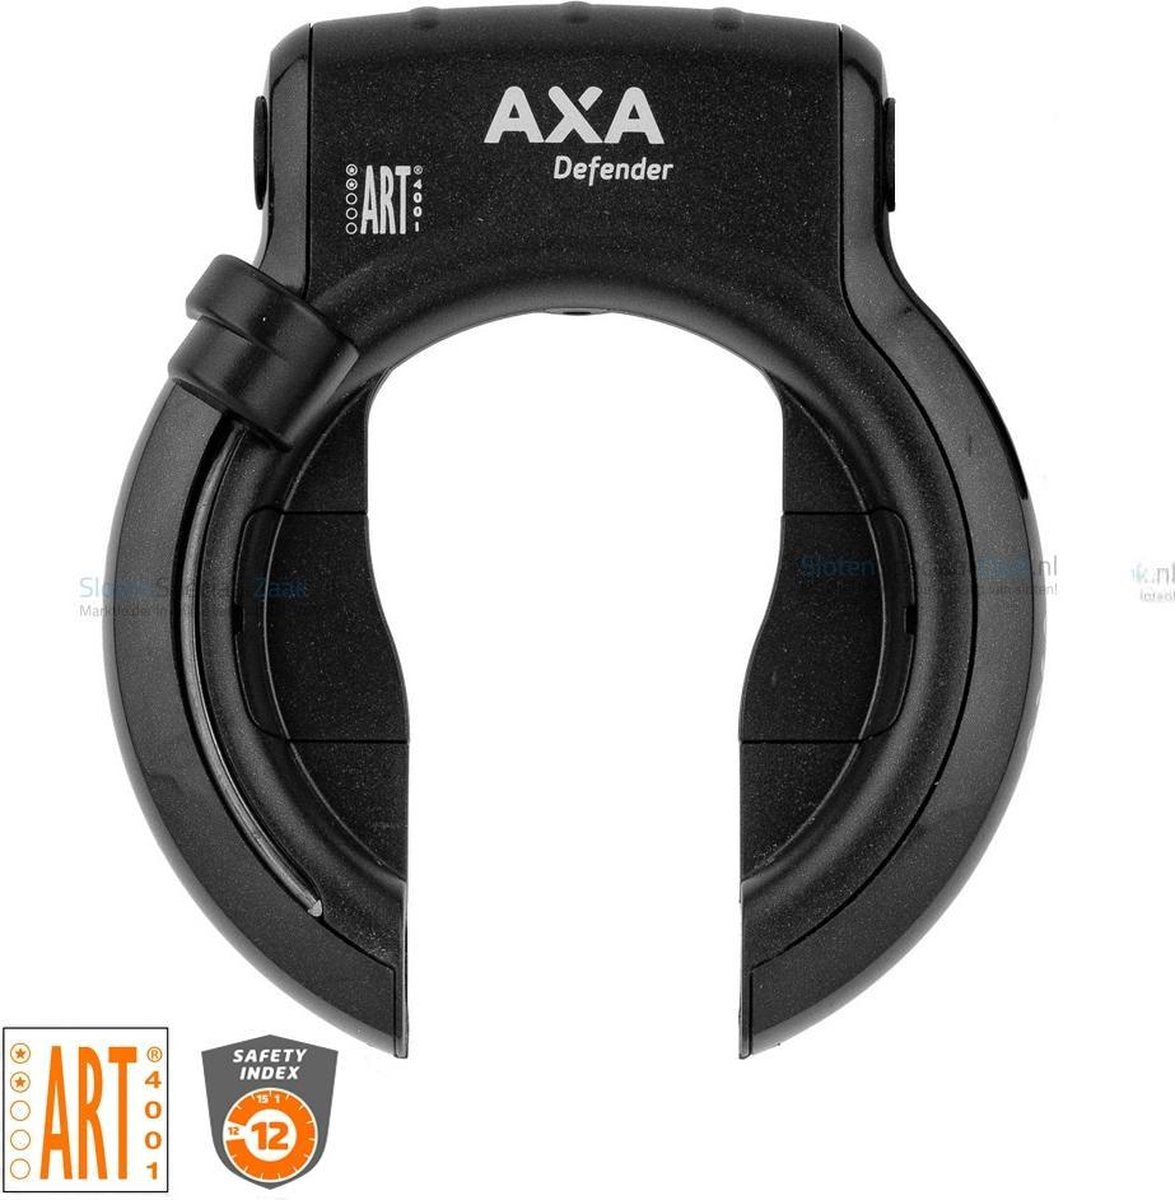 fiets slot - Axa - Ringslot - Defender Zwart